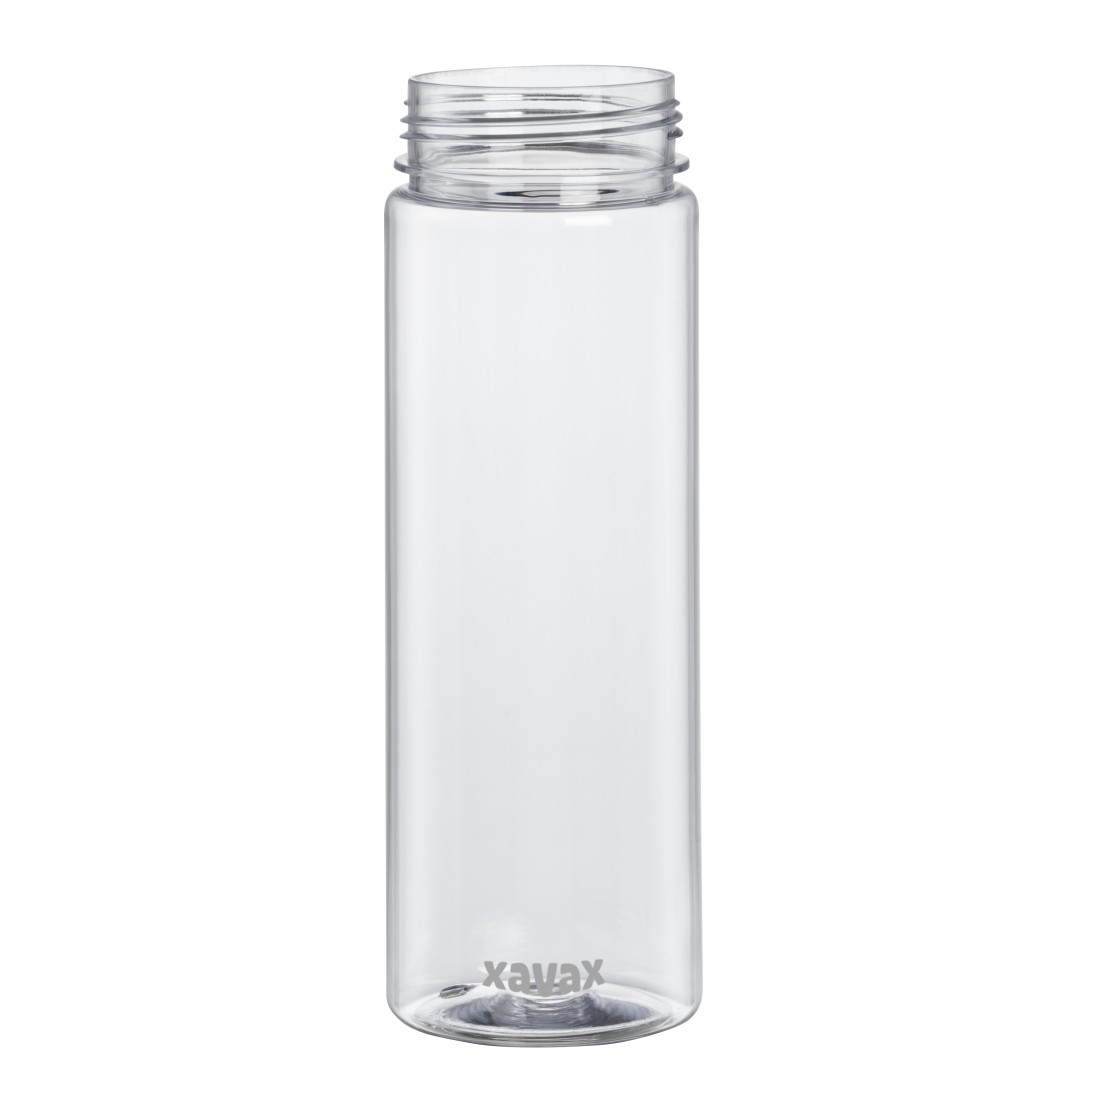 dex Druckfähiges Detail - Xavax, Trinkflasche, 900ml, auslaufsicher, Henkel, Schraubverschluss, Transparent